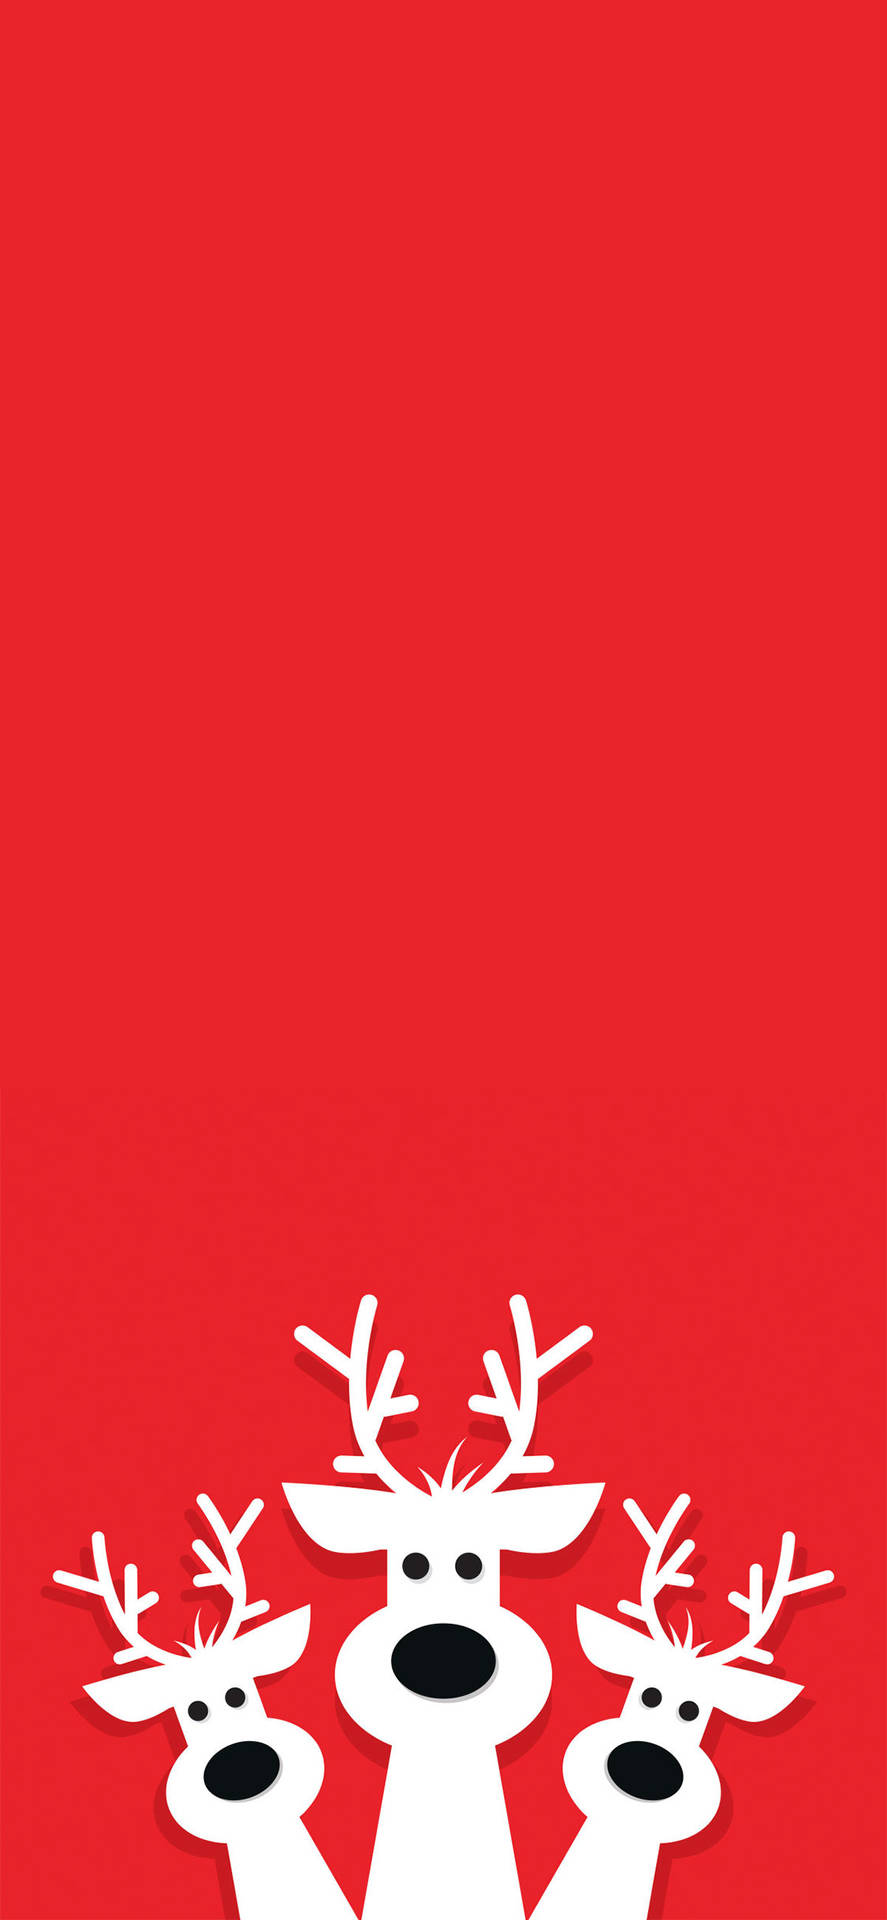 Simple Red Christmas Reindeers Wallpaper